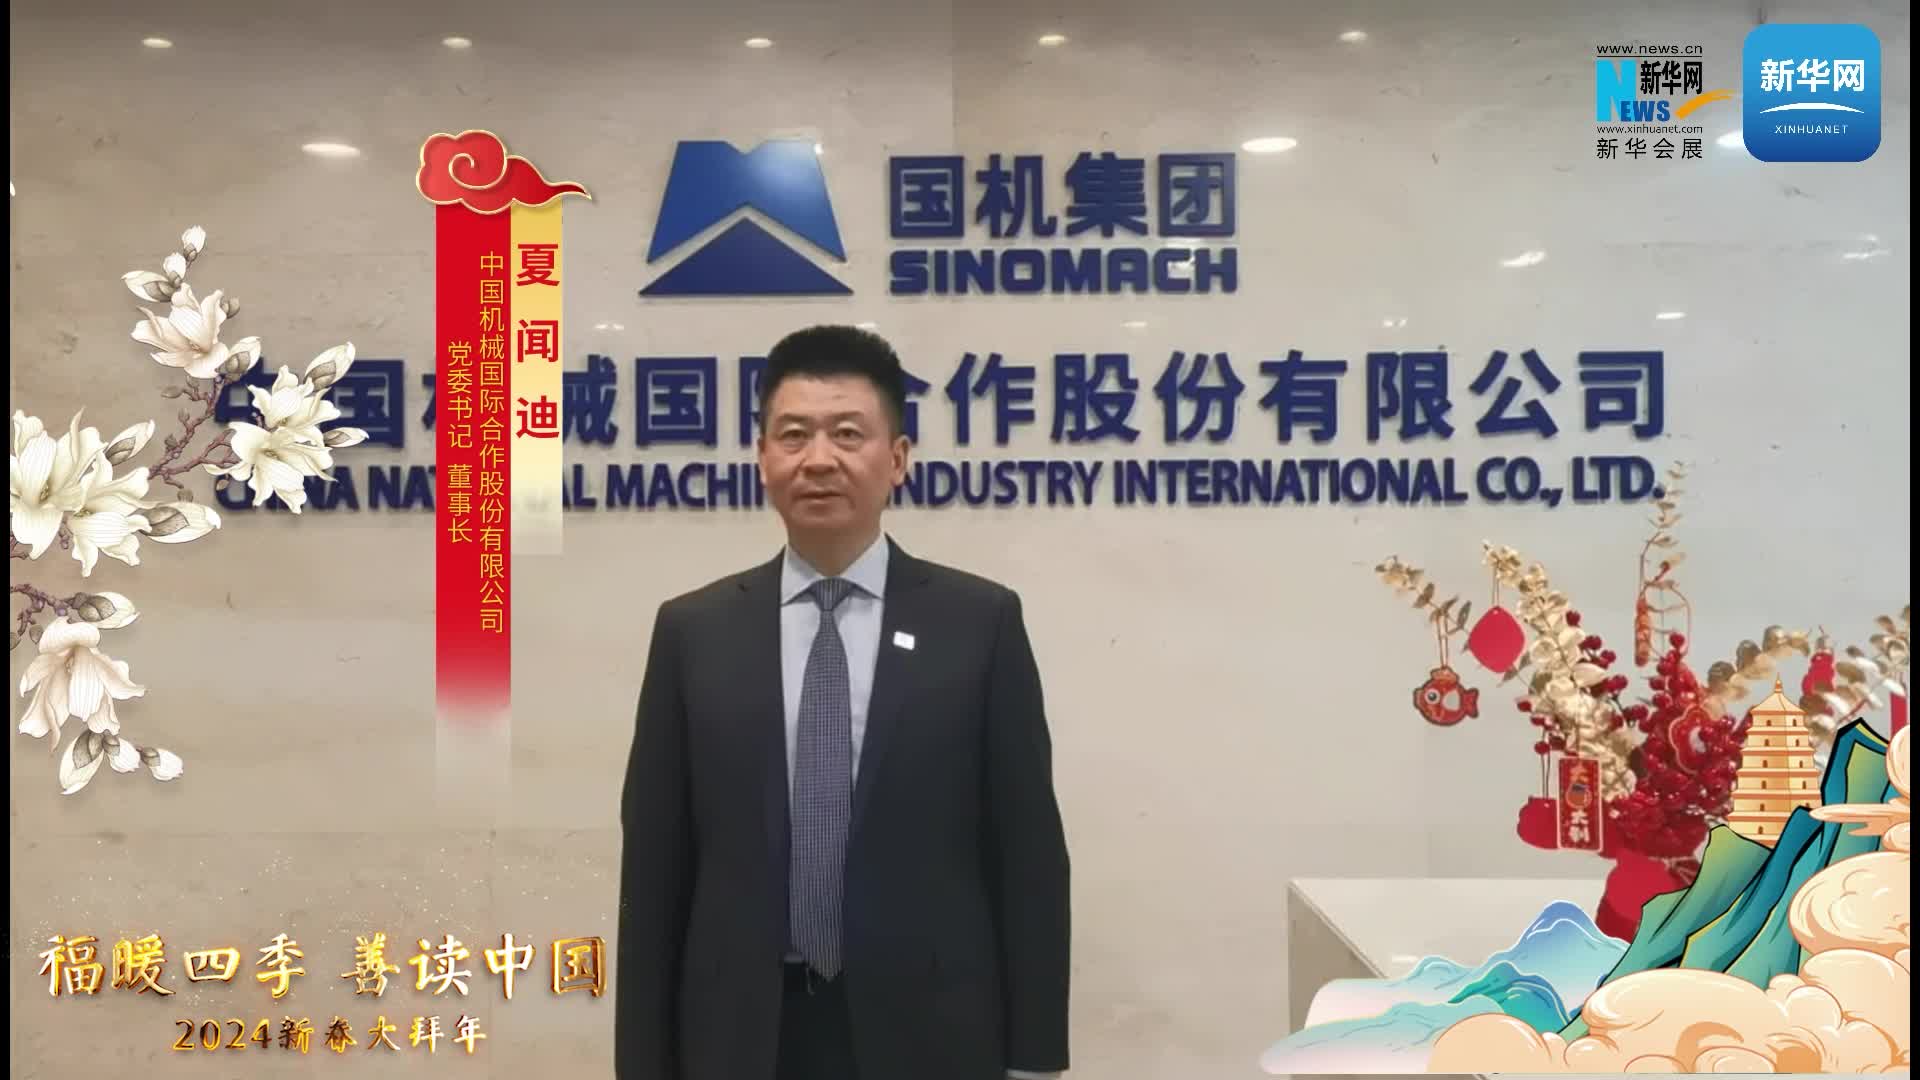 中国机械国际合作股份有限公司党委书记、董事长夏闻迪恭贺新春